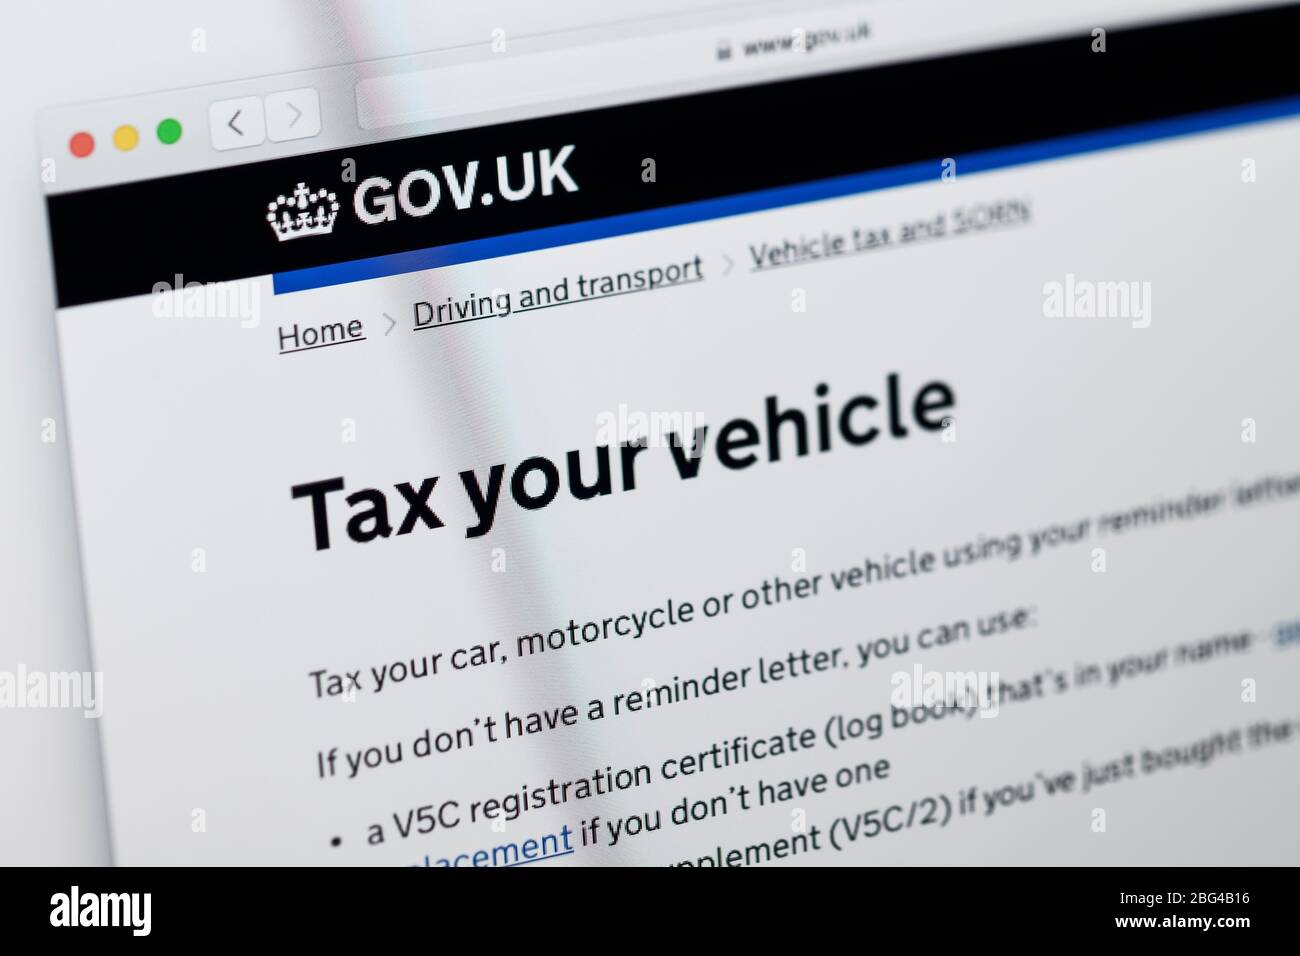 Gros plan sur la page d'accueil du site Web du gouvernement britannique, qui affiche des informations sur la taxe de votre véhicule Banque D'Images